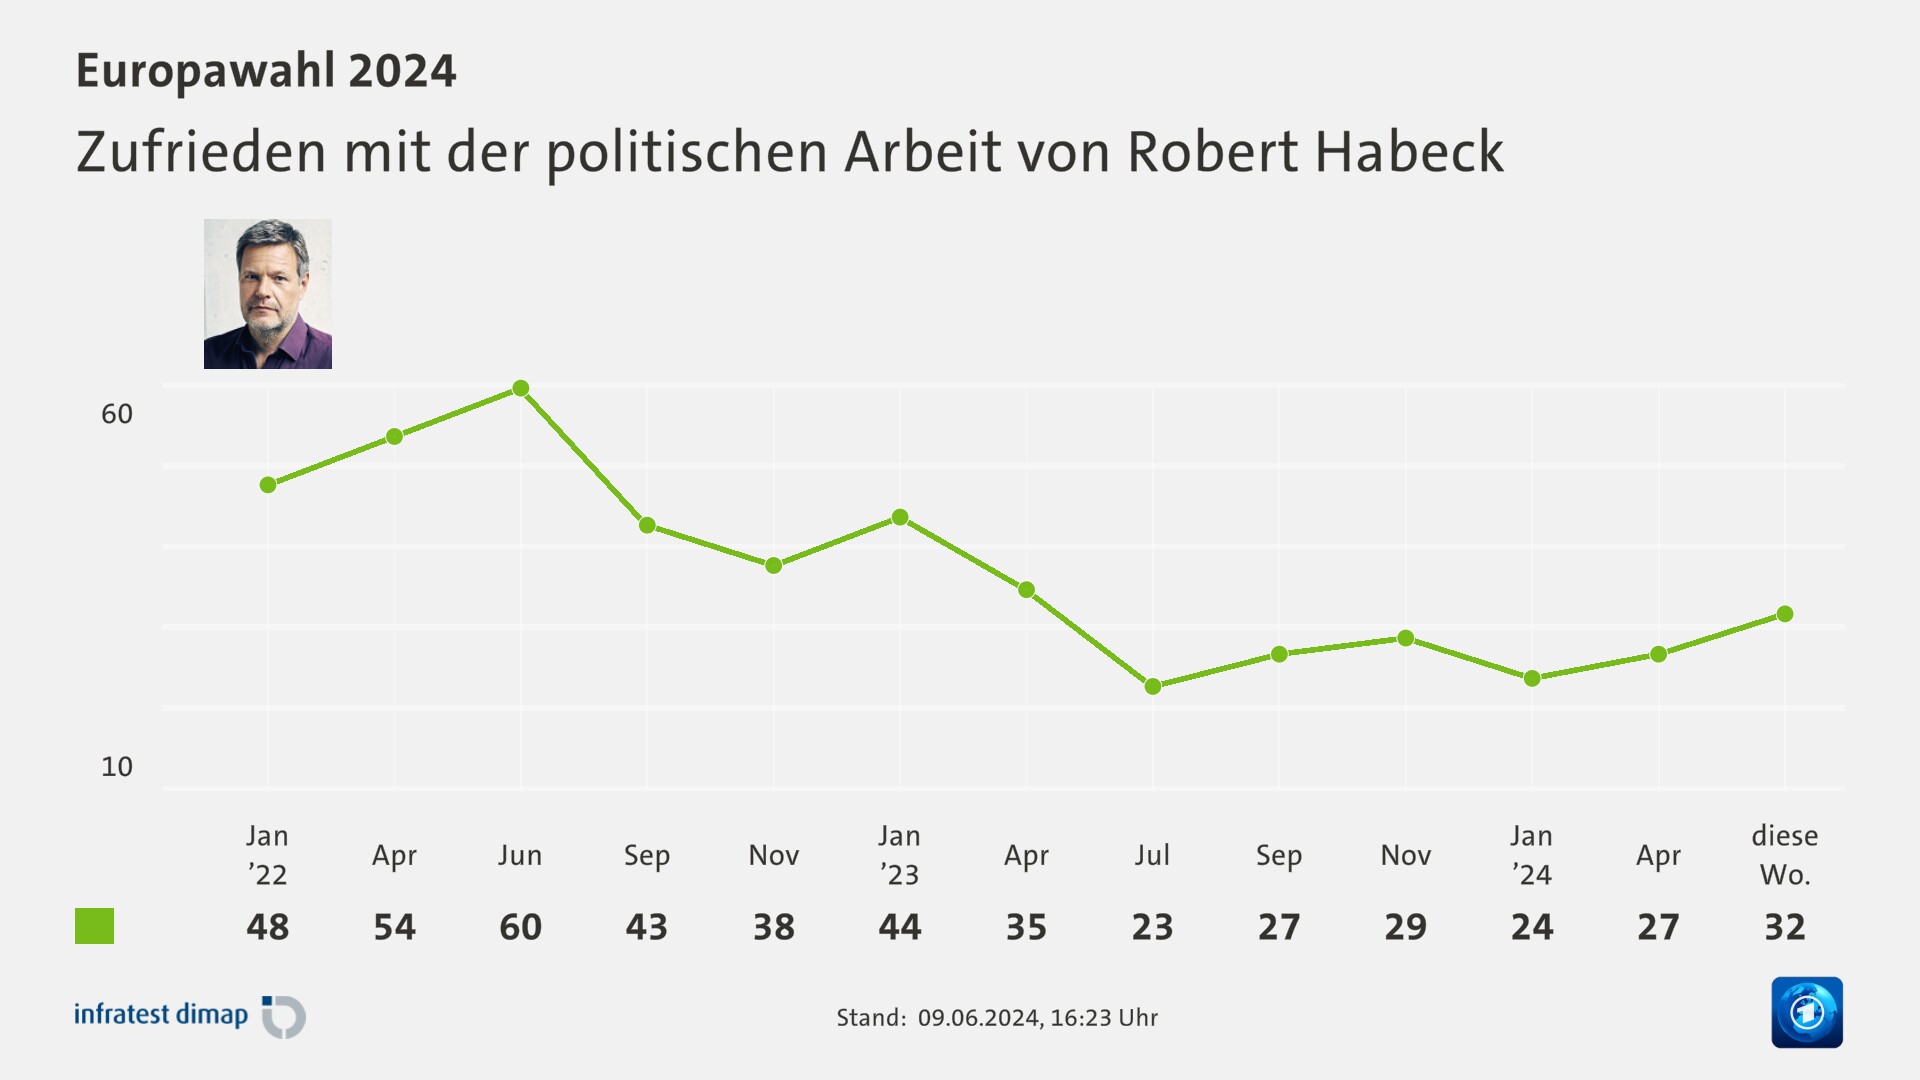 Zufrieden mit der politischen Arbeit von Robert Habeck